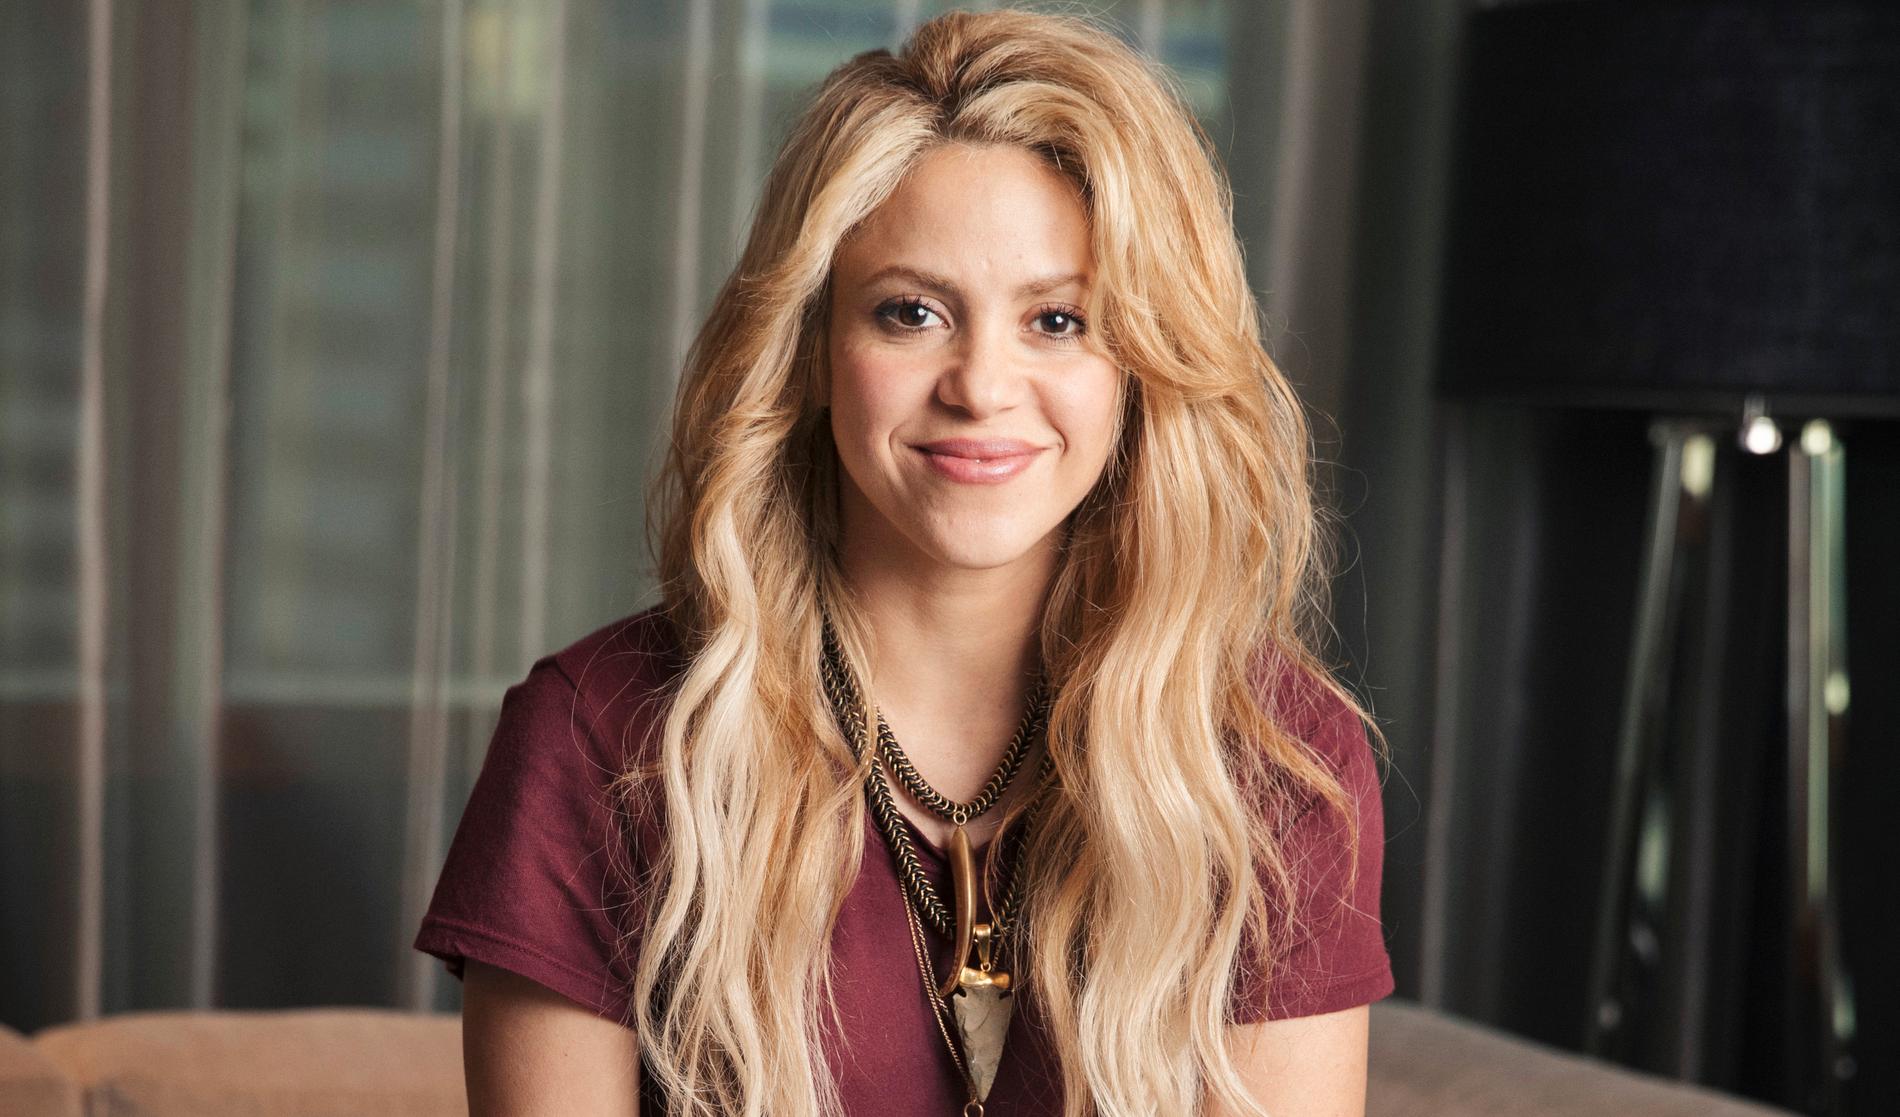 Sångerskan Shakira ställs inför rätta för skattebedrägeri i Spanien. Arkivbild.